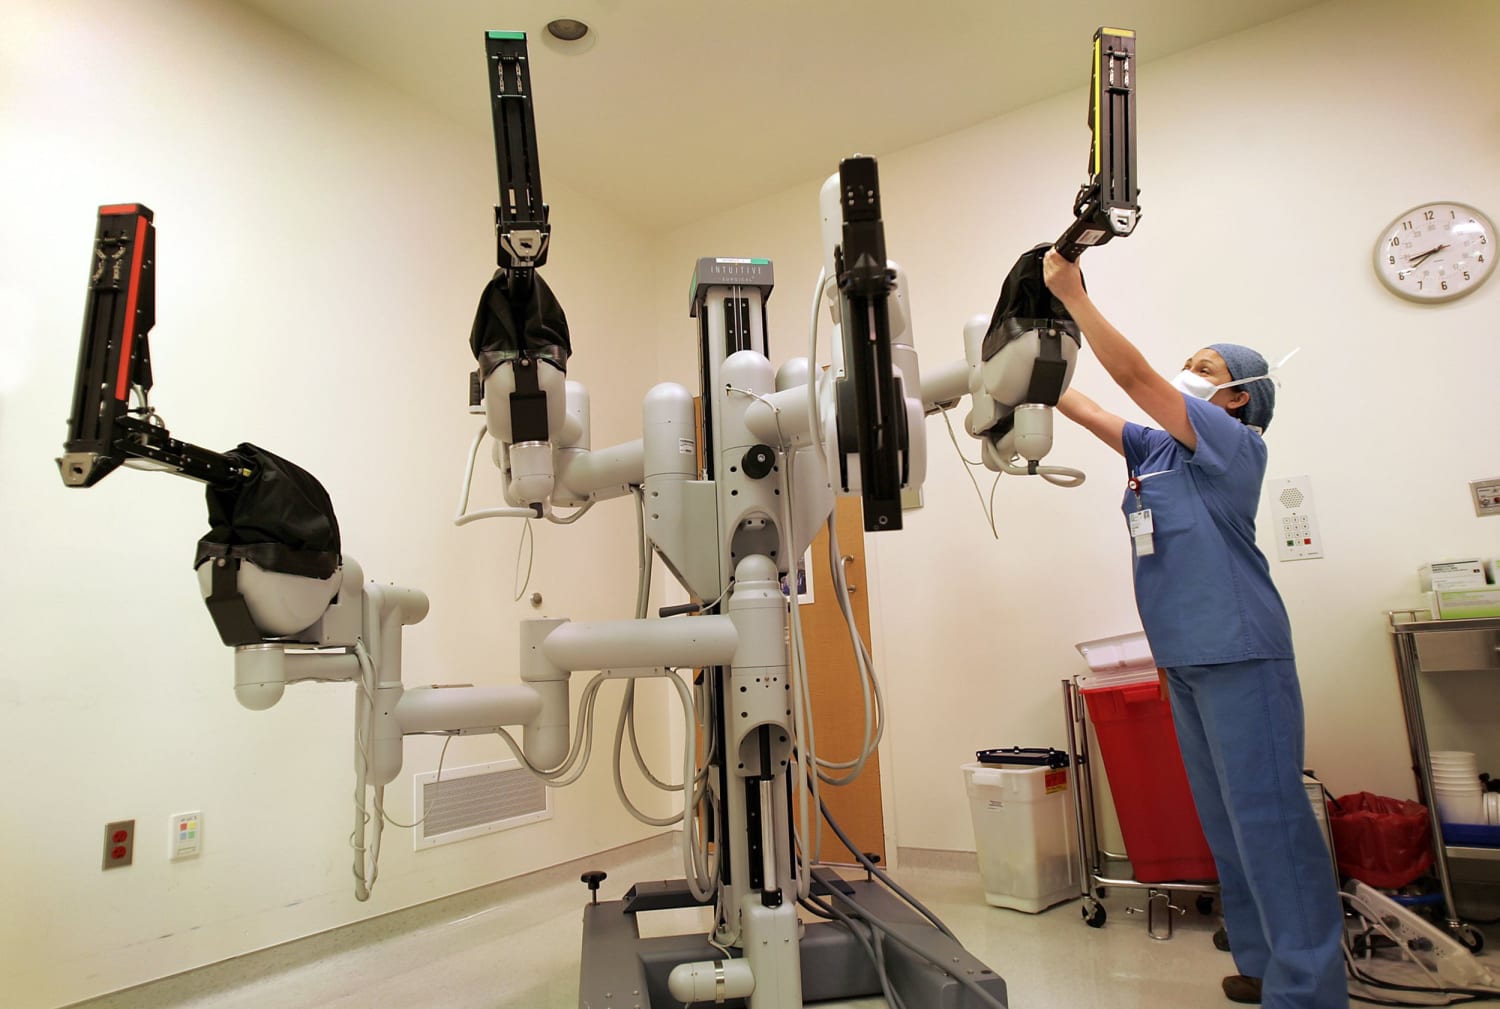 Morbosidad cocinero Saca la aseguranza The da Vinci surgical robot: A medical breakthrough with risks for patients